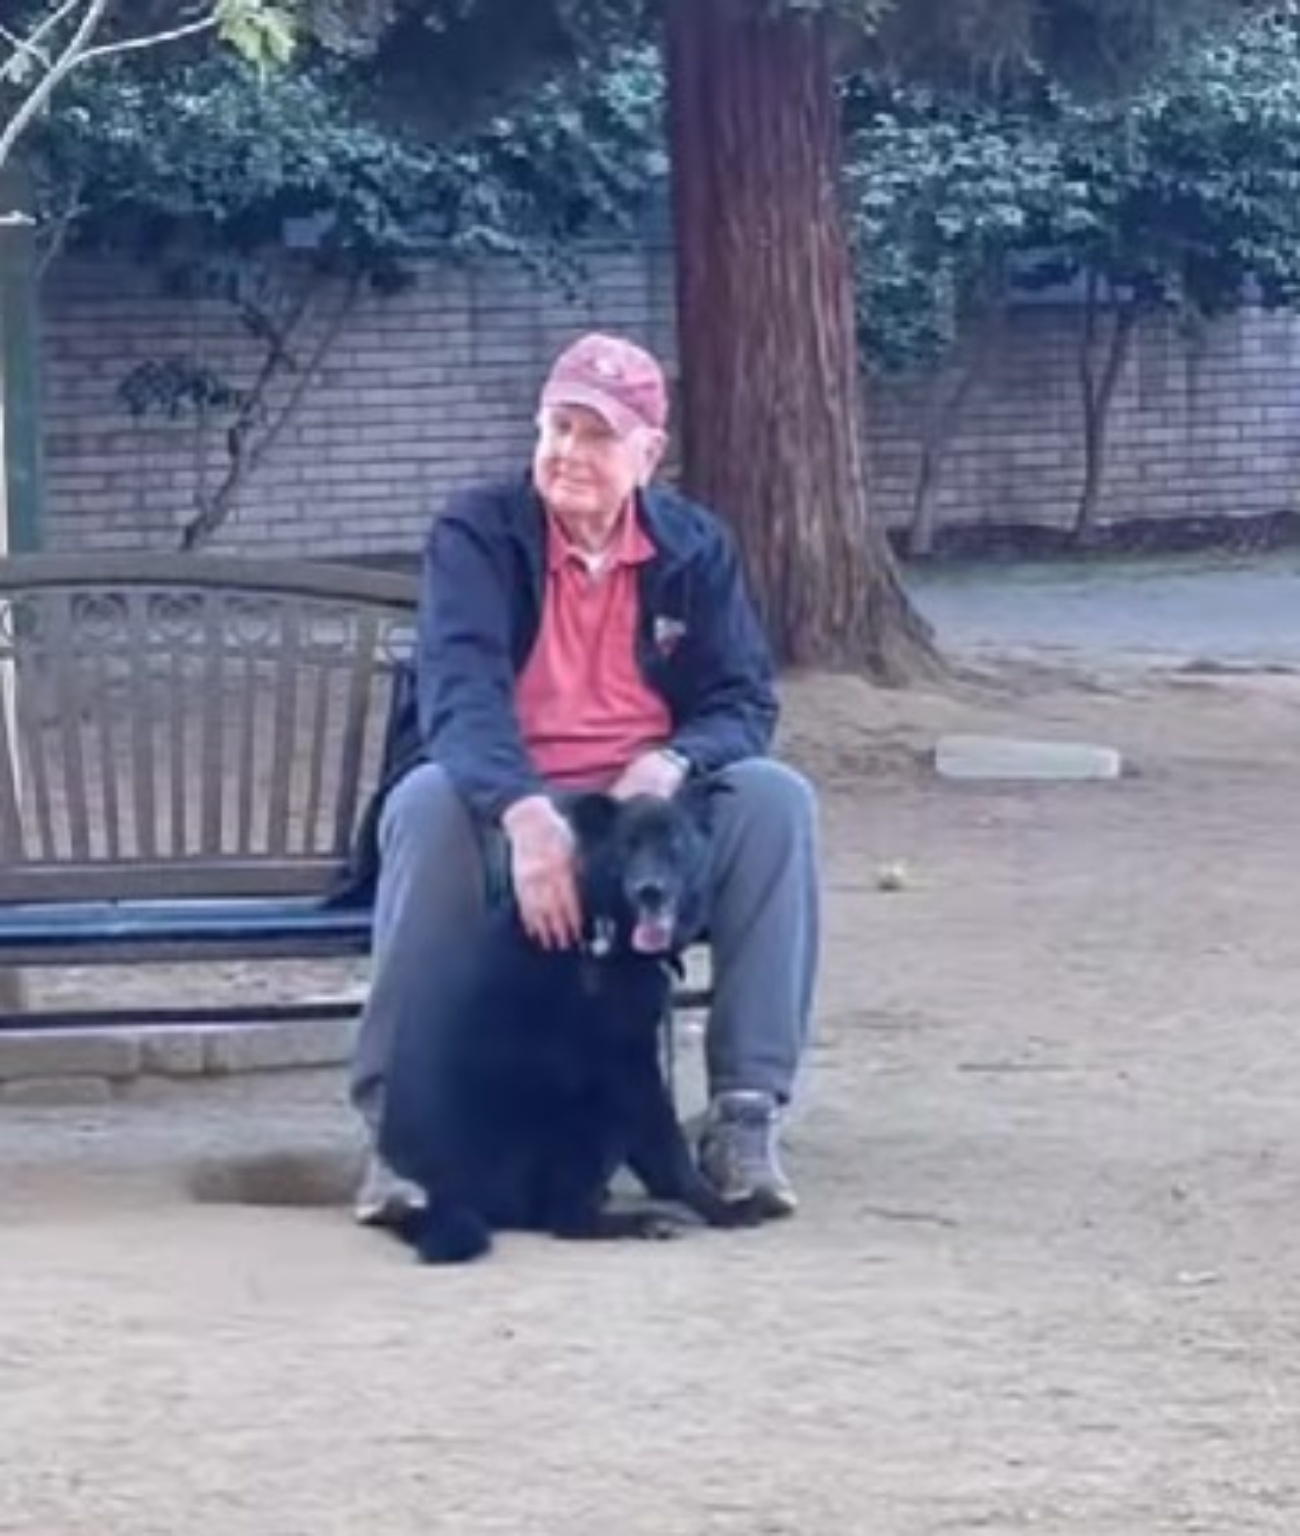 cane e anziano al parco